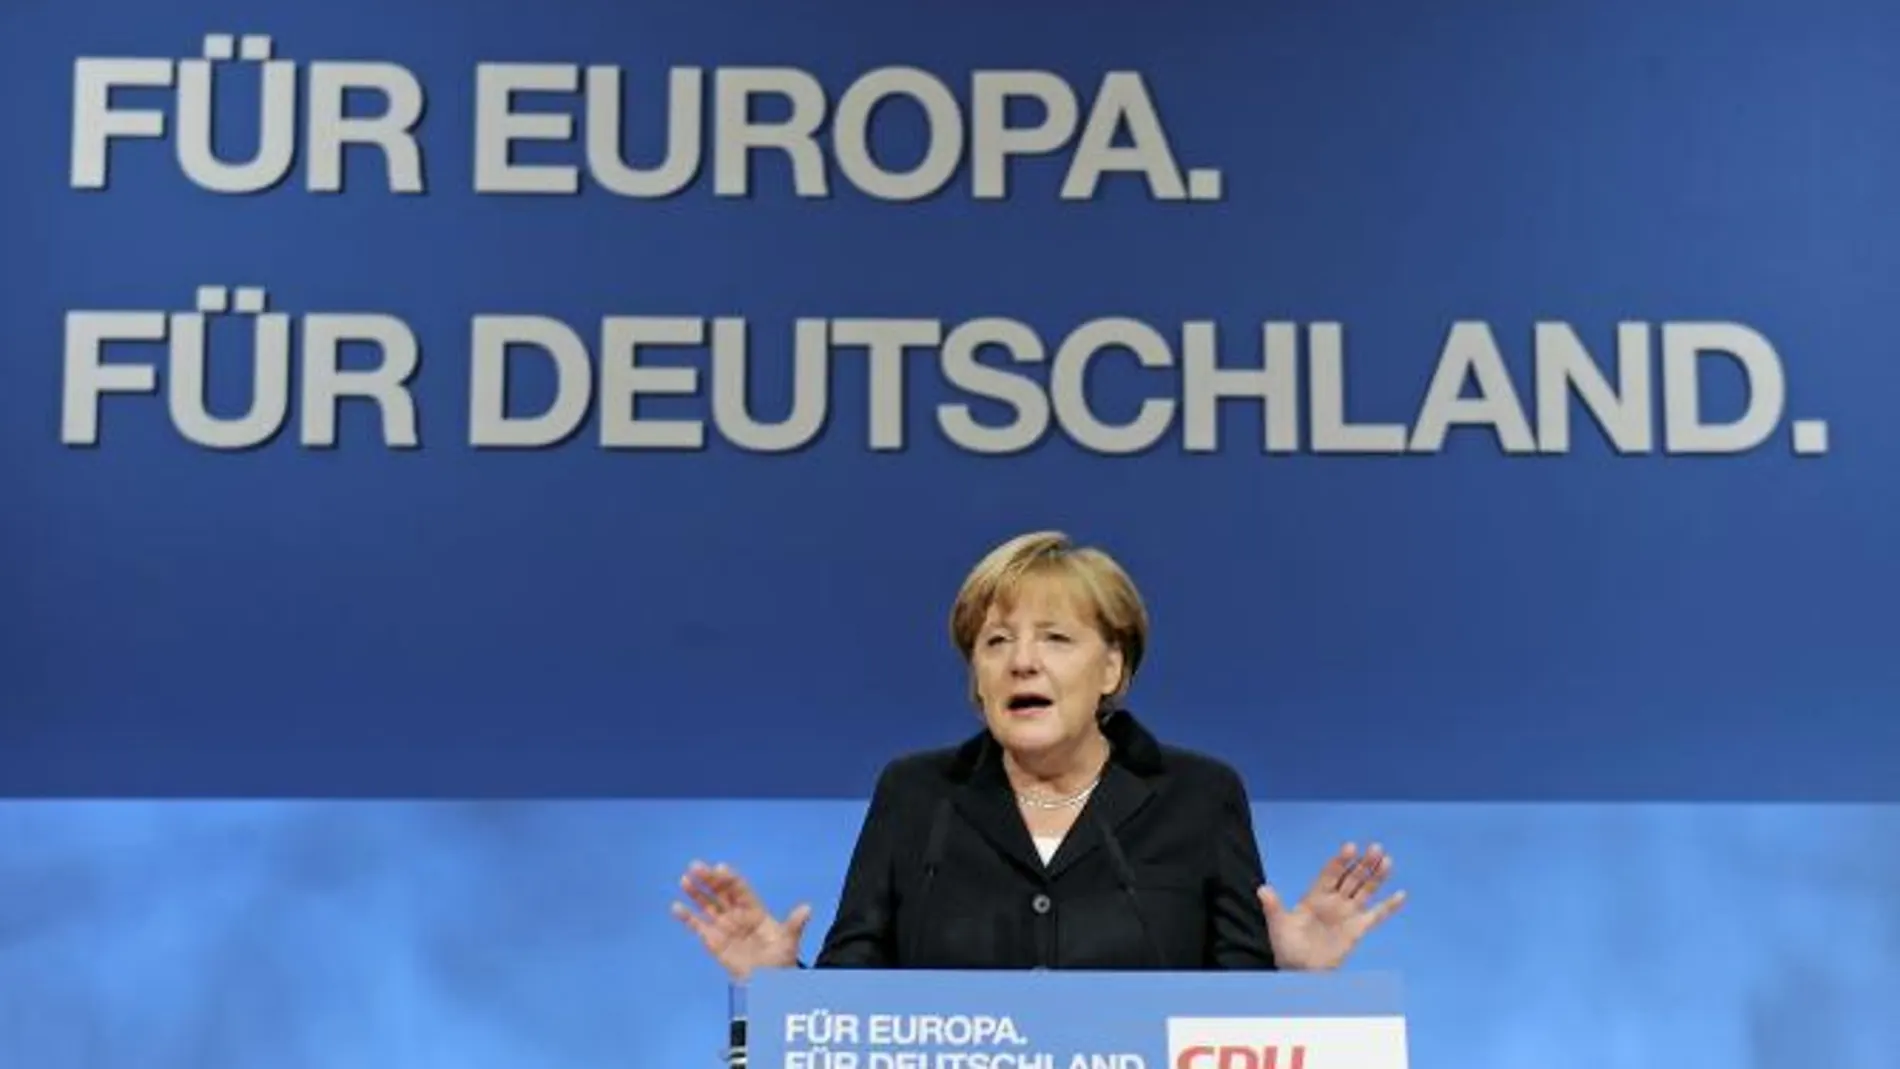 Merkel subraya que Europa se enfrenta a su crisis más difícil desde la posguerra